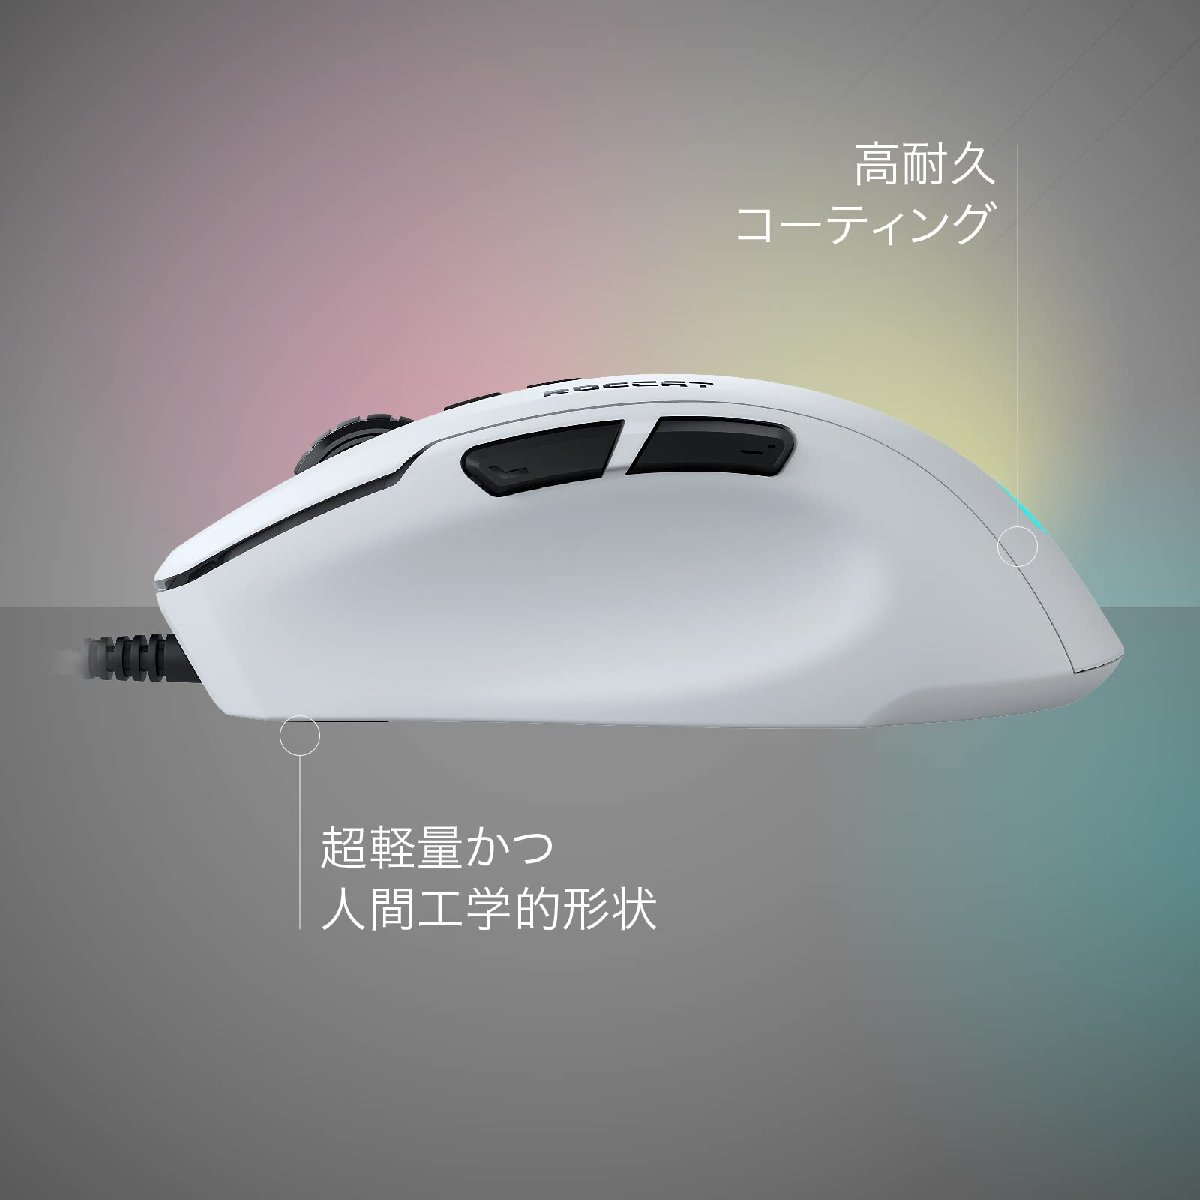 送料無料★ROCCAT ゲーミングマウス Kone Pure Ultra 有線 PVC コーラルブルーム (ホワイト)_画像3